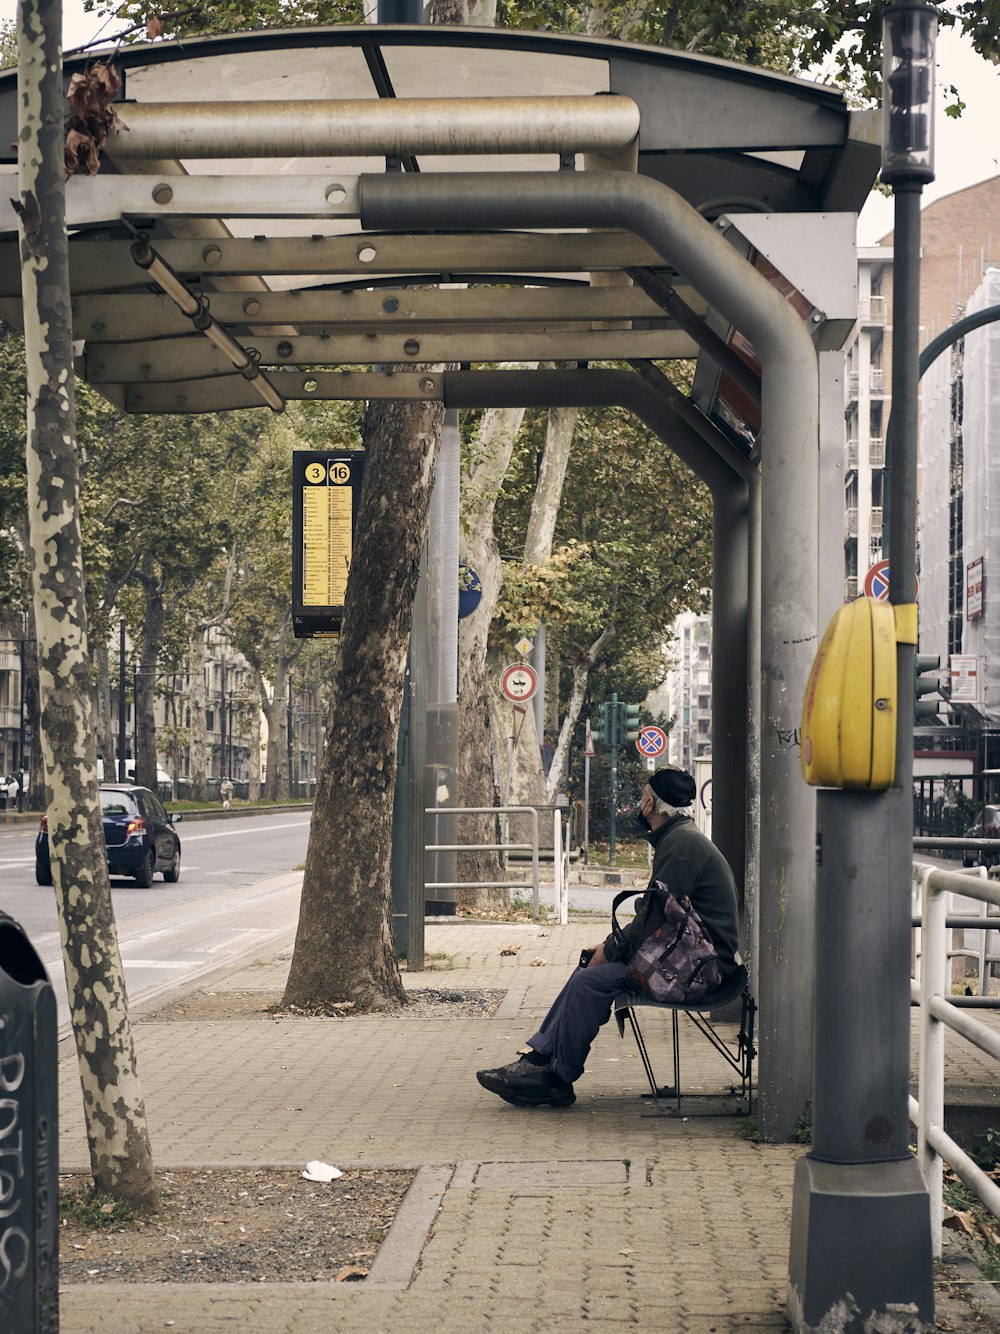 a man sitting in a chair on a sidewalk